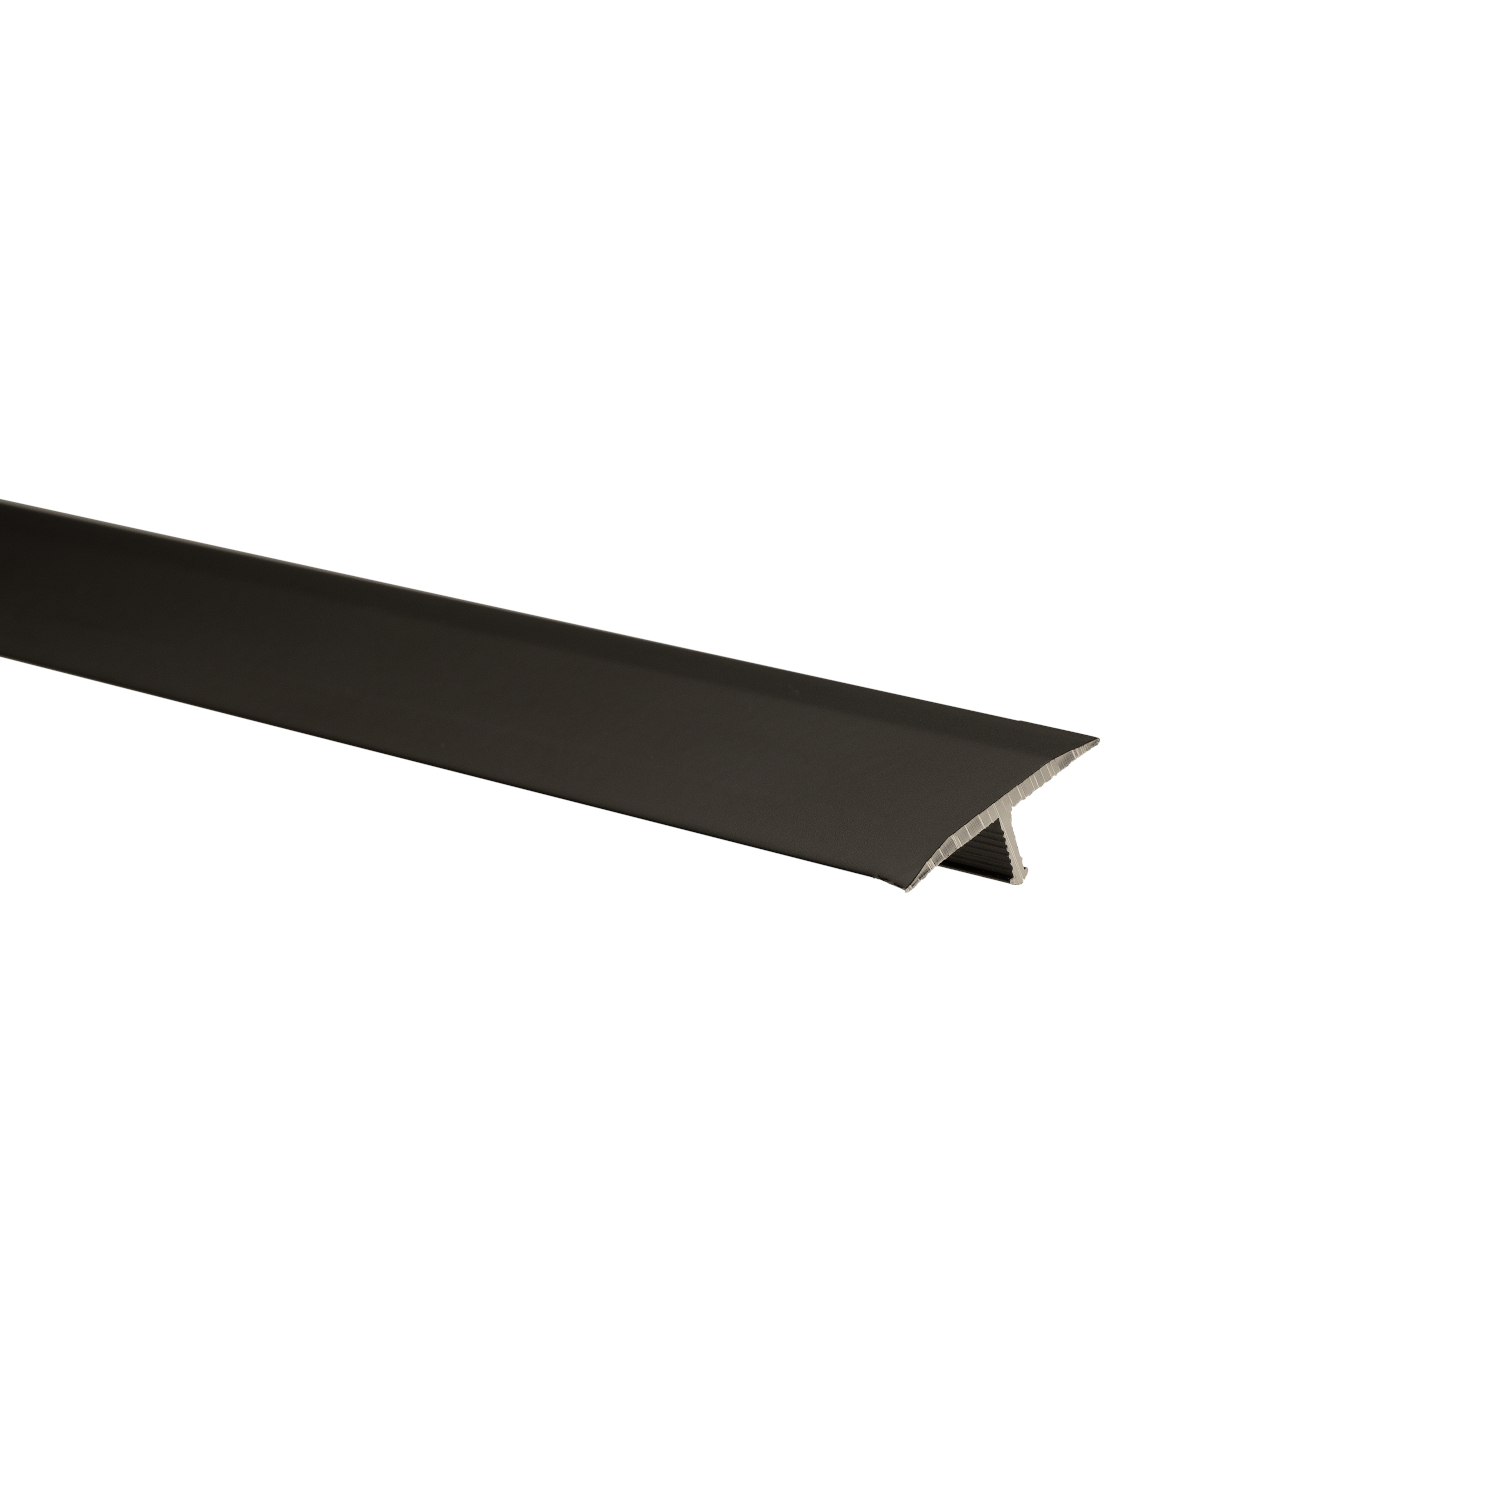 Profil de trecere fara diferenta de nivel SET S56 BLK, aluminiu, tip T, negru, 2.5 m 2.5